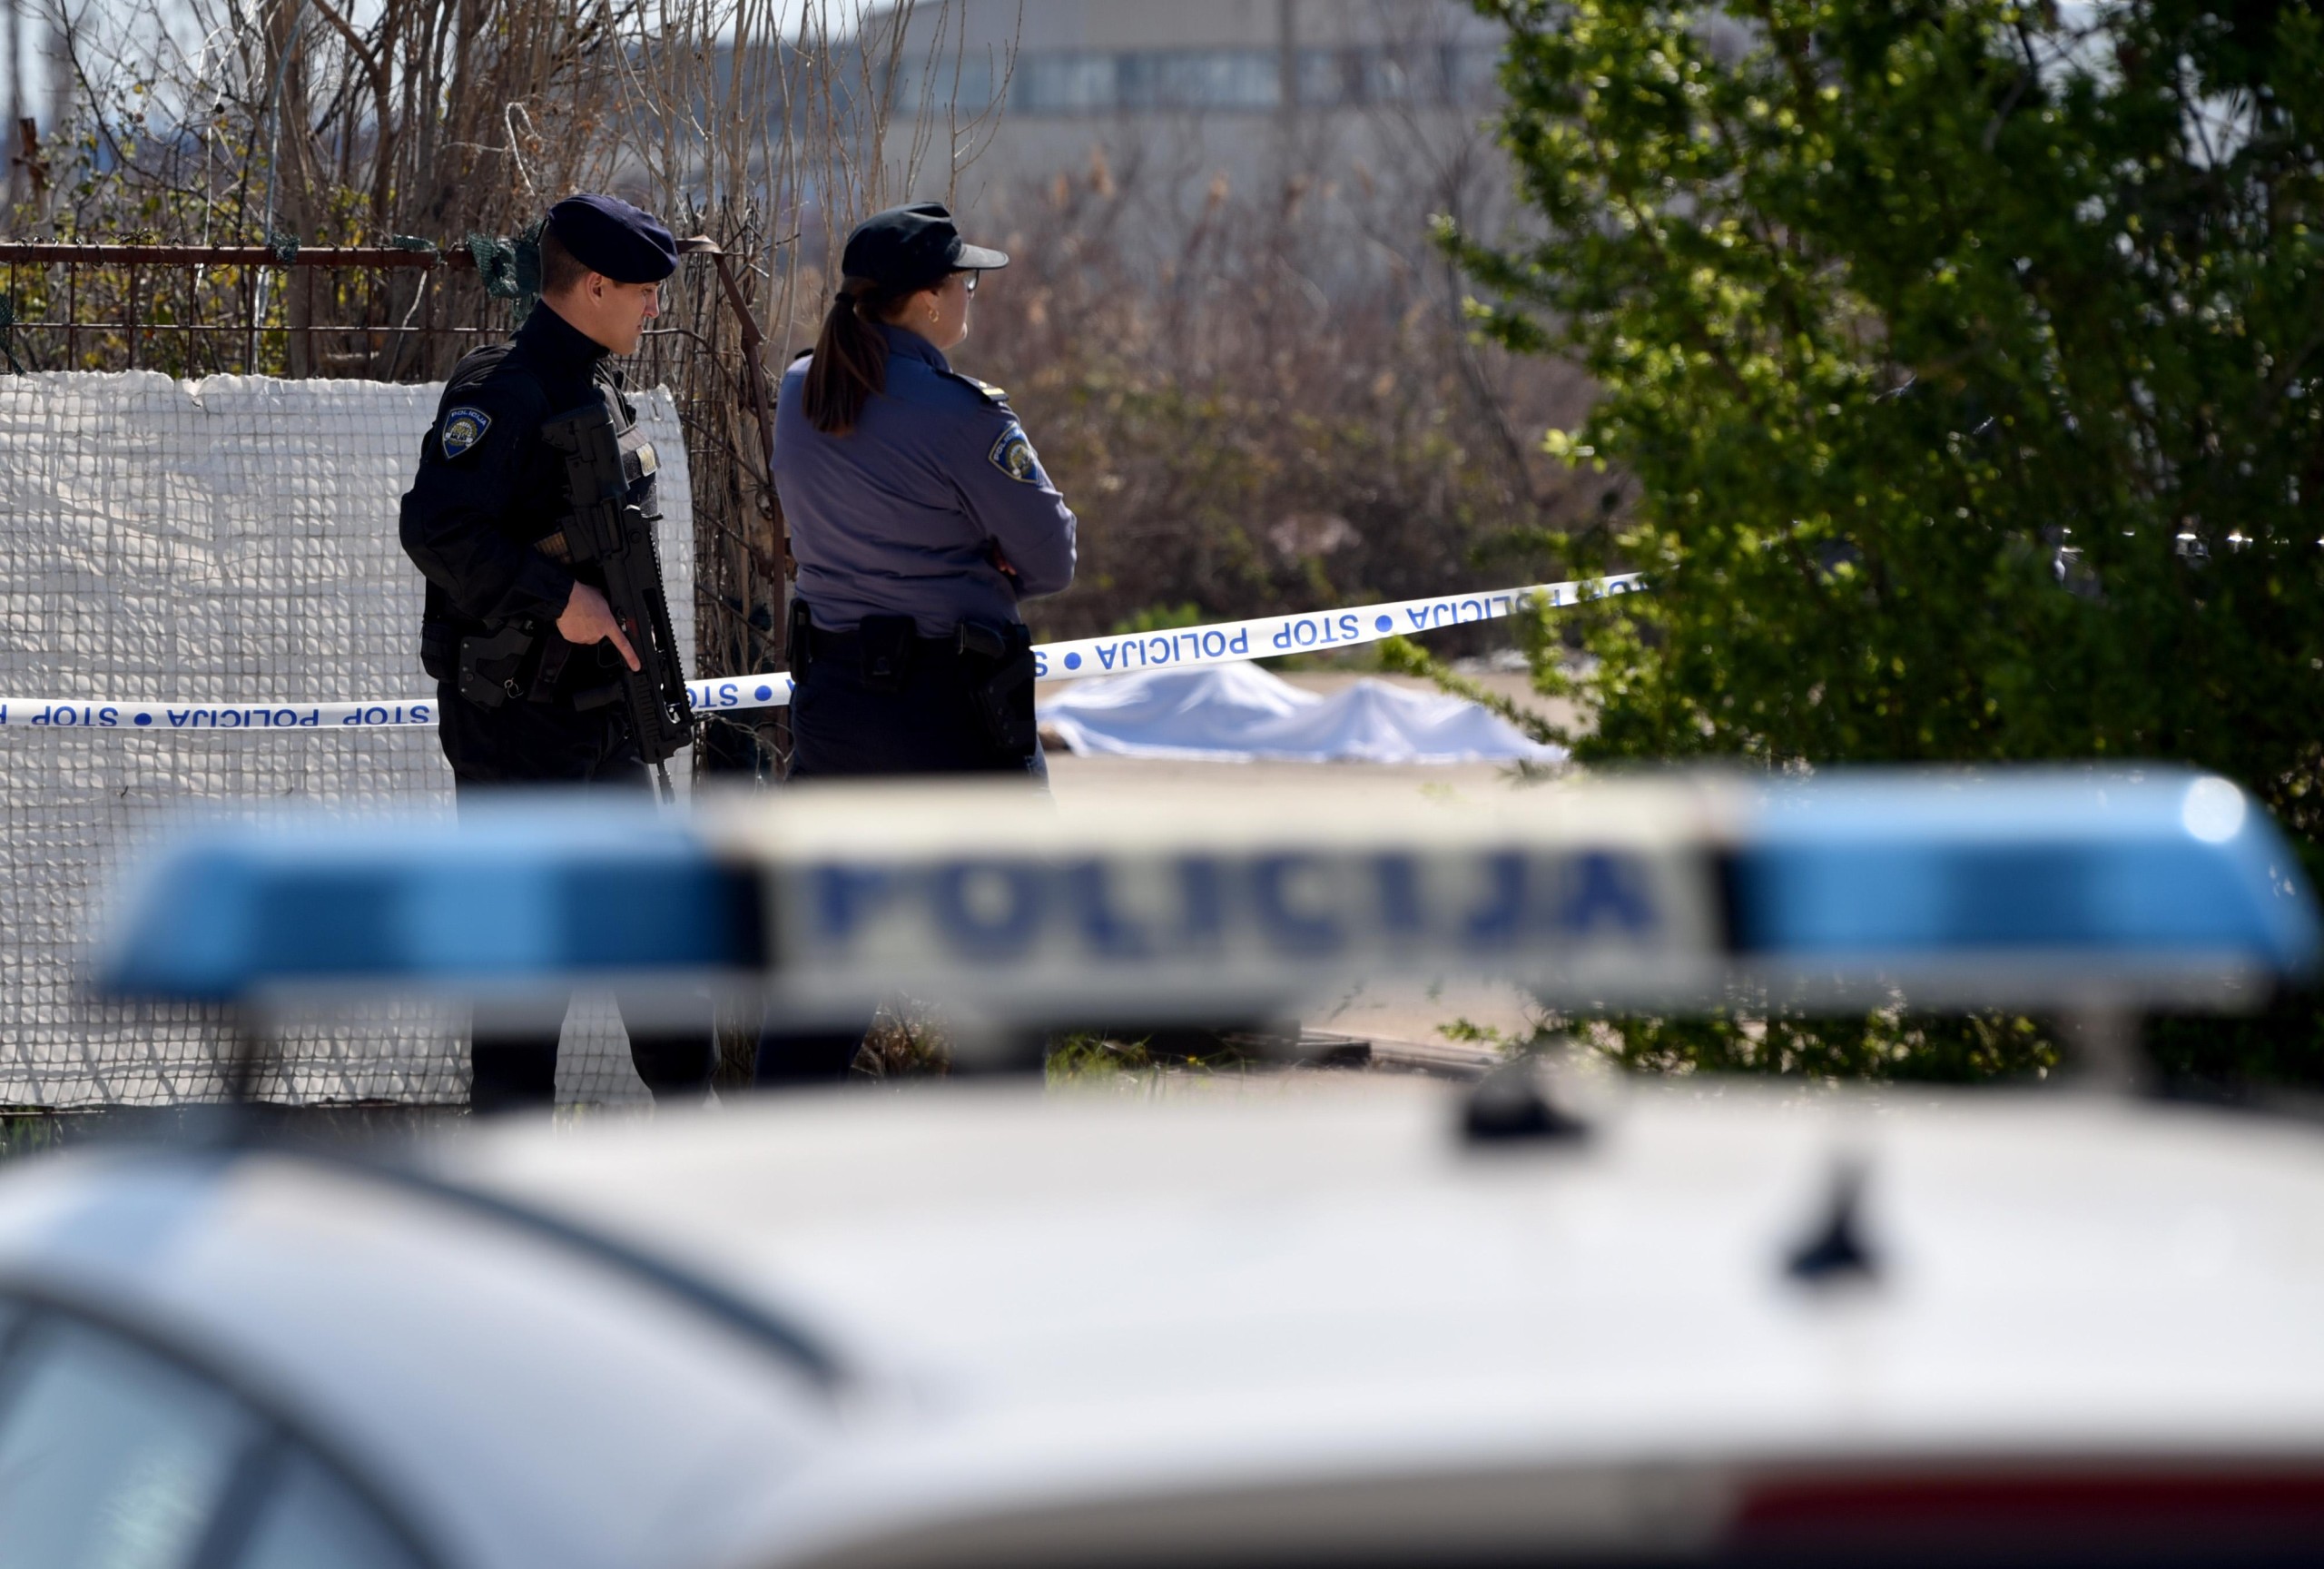 25.03.2022., Ploce - Policijski ocevid u pored deponija gdje je pronadjeno tijelo ubijenog muskarca. Photo: Matko Begovic/PIXSELL